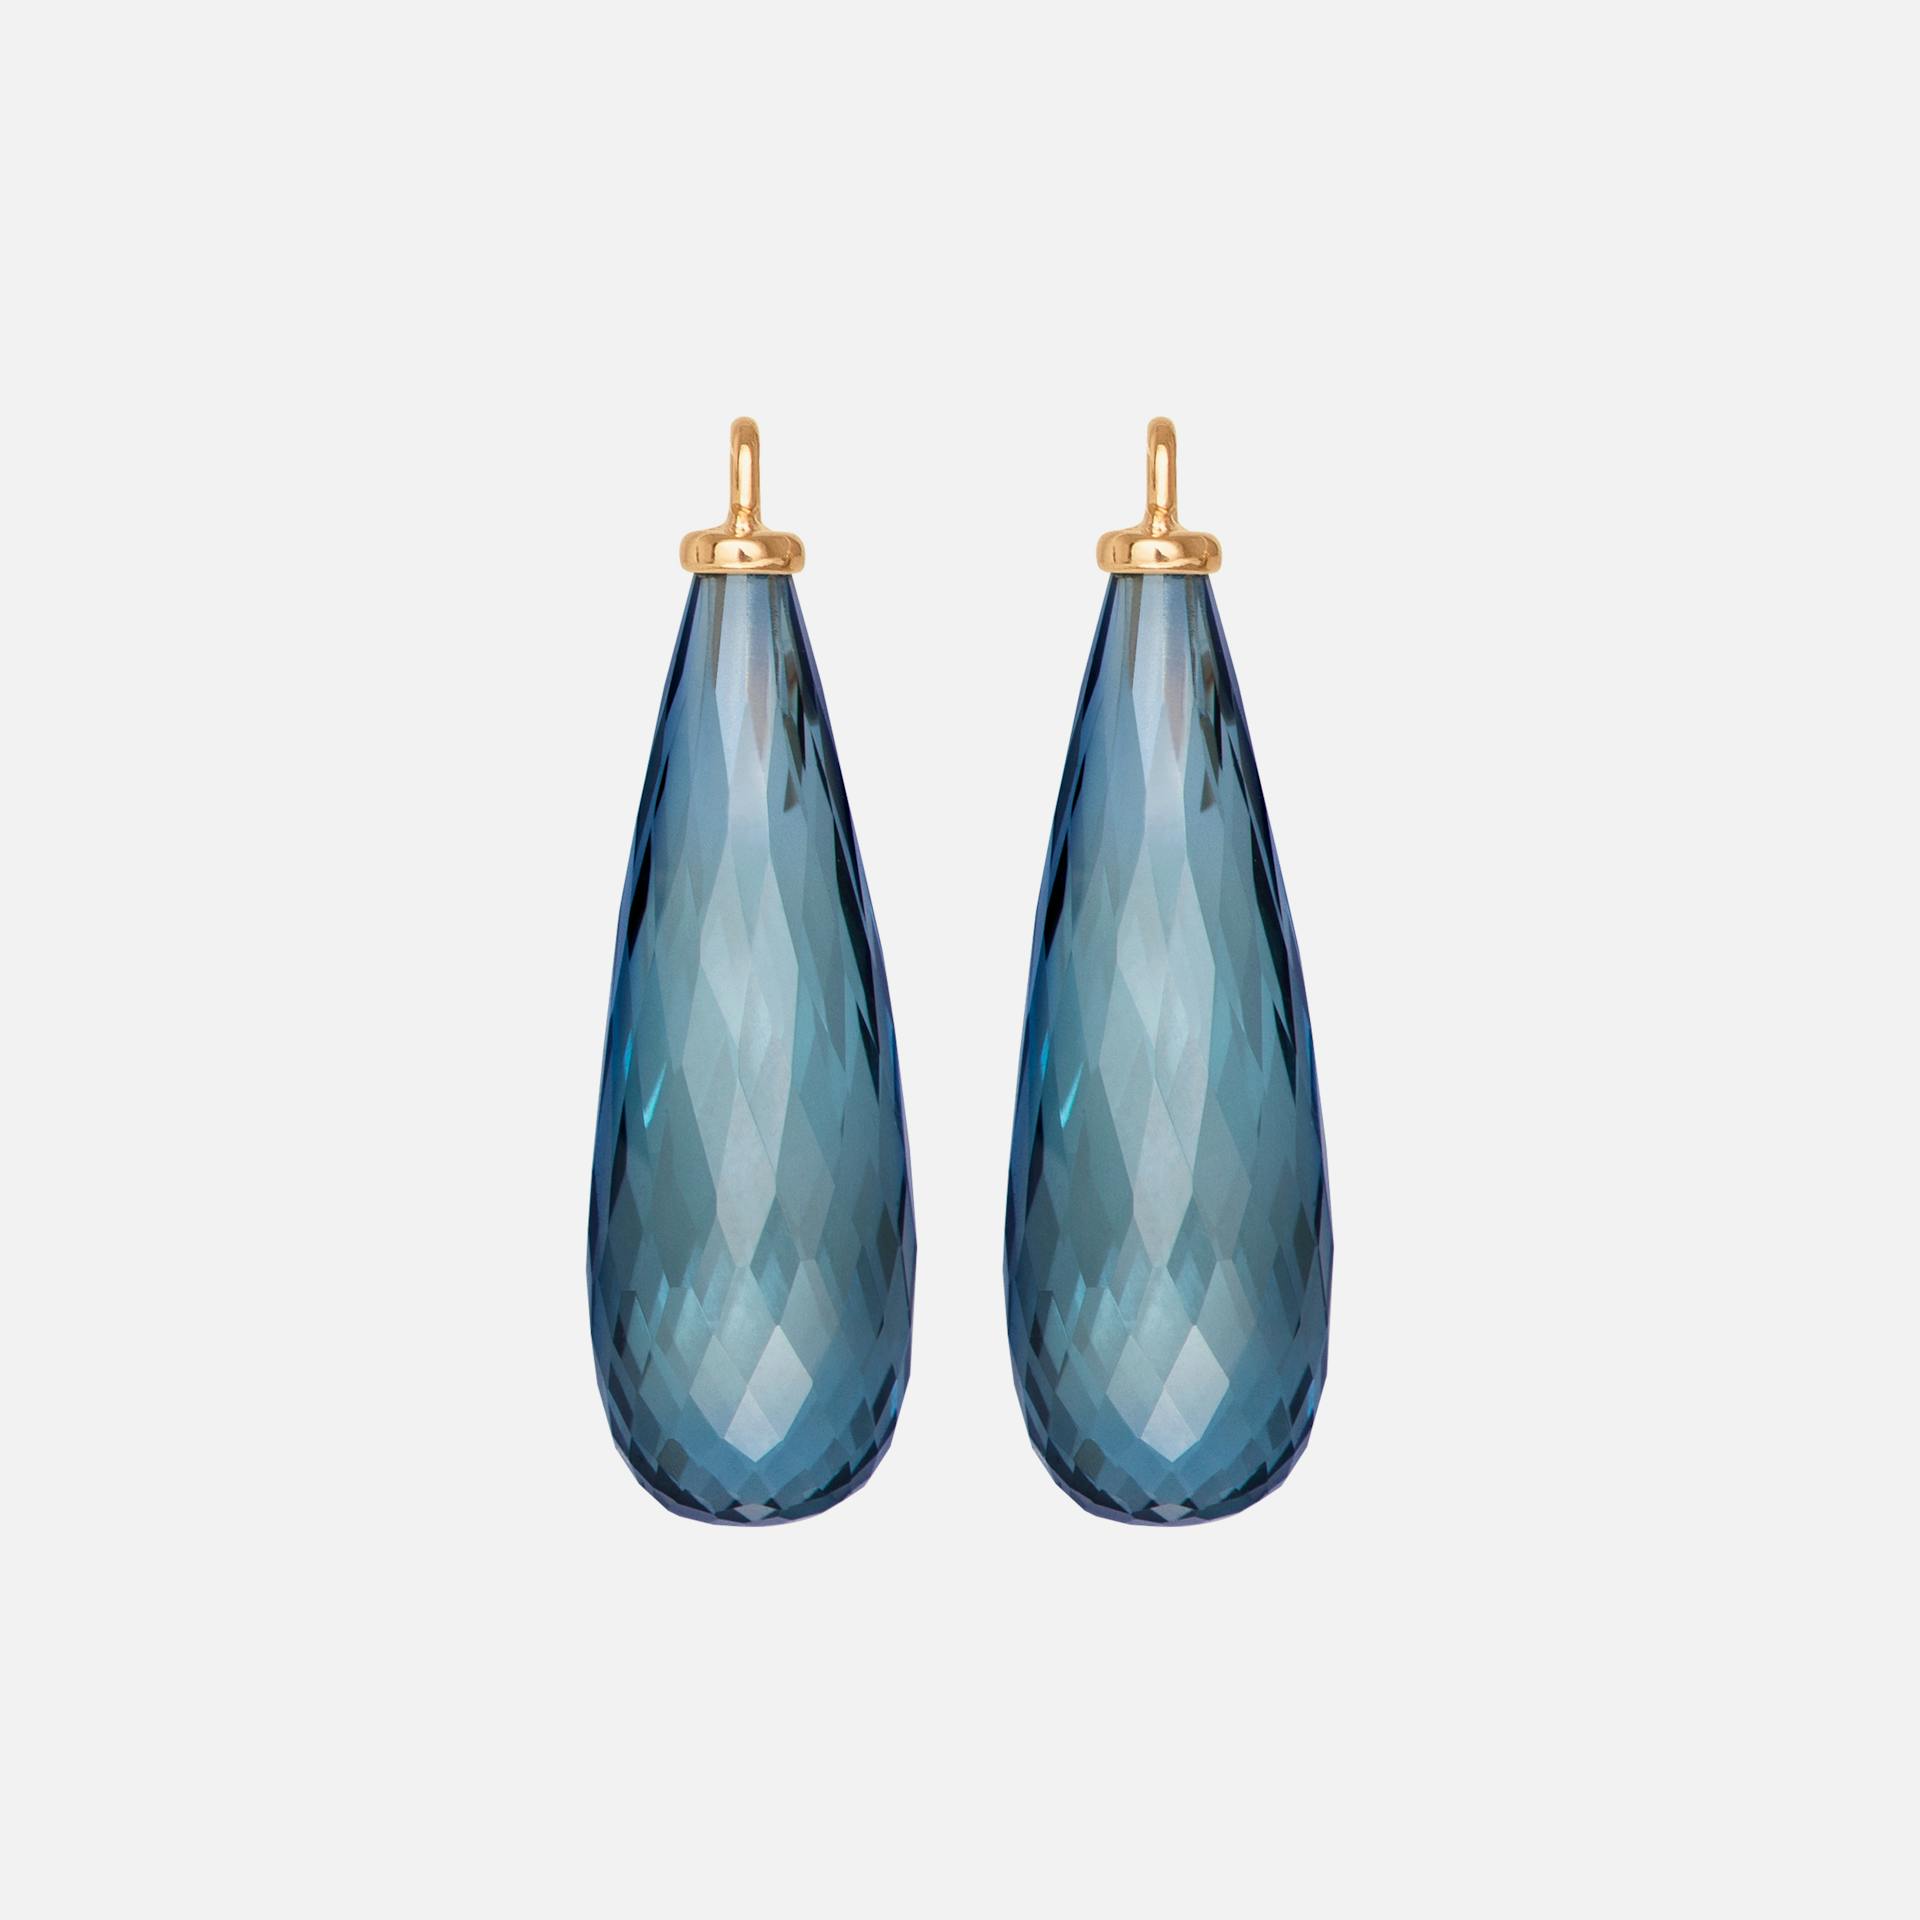 Drop Earring Pendants in 18K Yellow Gold with London Blue Topaz |  Ole Lynggaard Copenhagen 